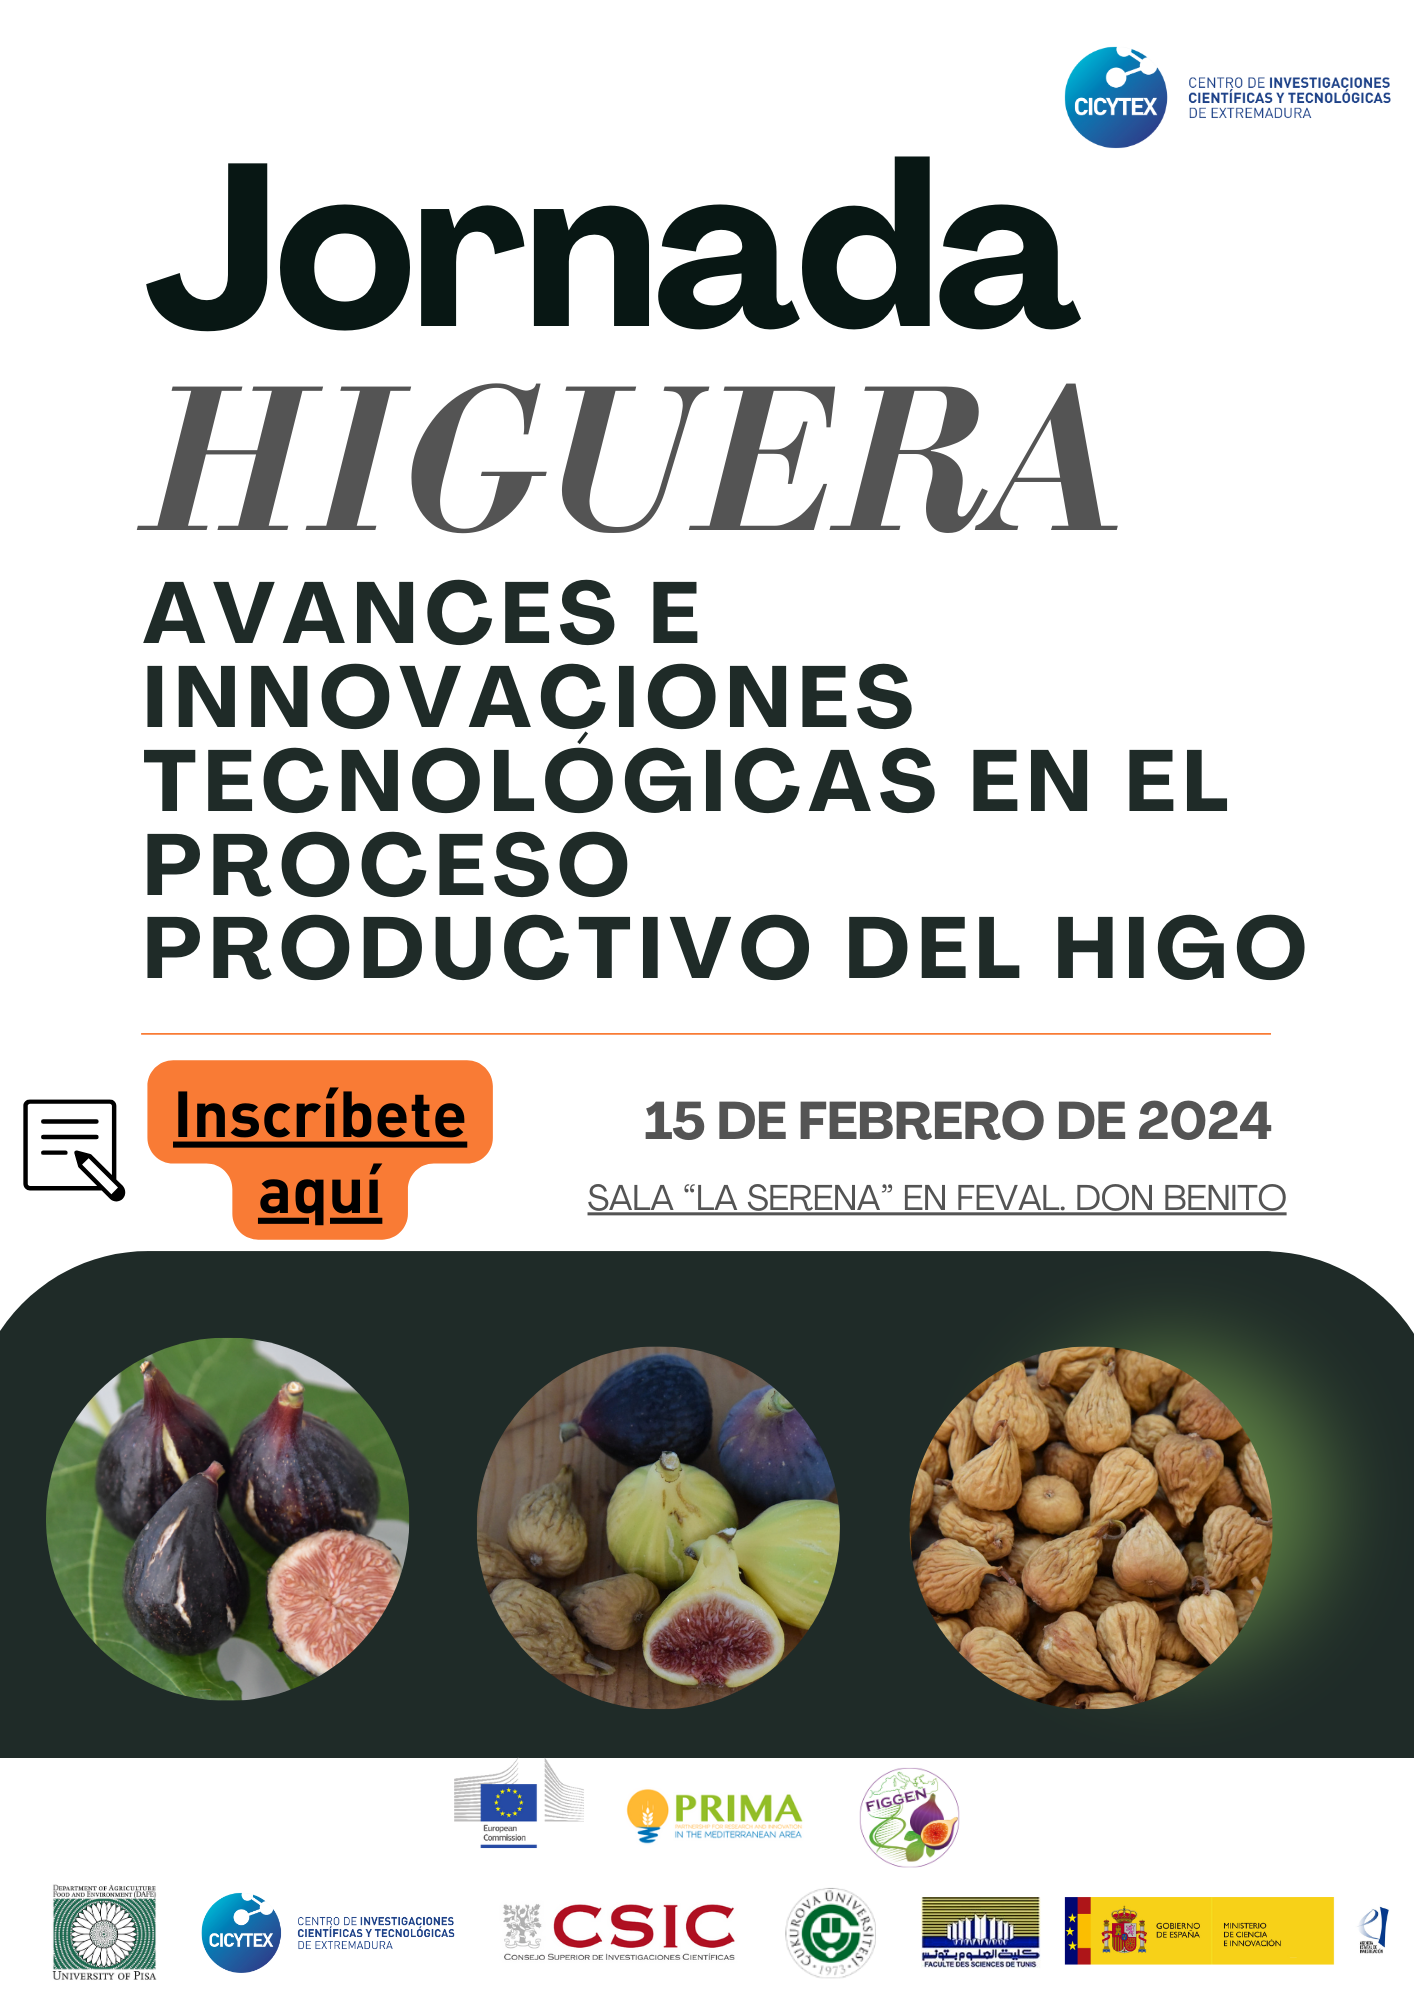 Image 4 of article Una investigación de CICYTEX destaca el potencial del cultivo del higo en Extremadura